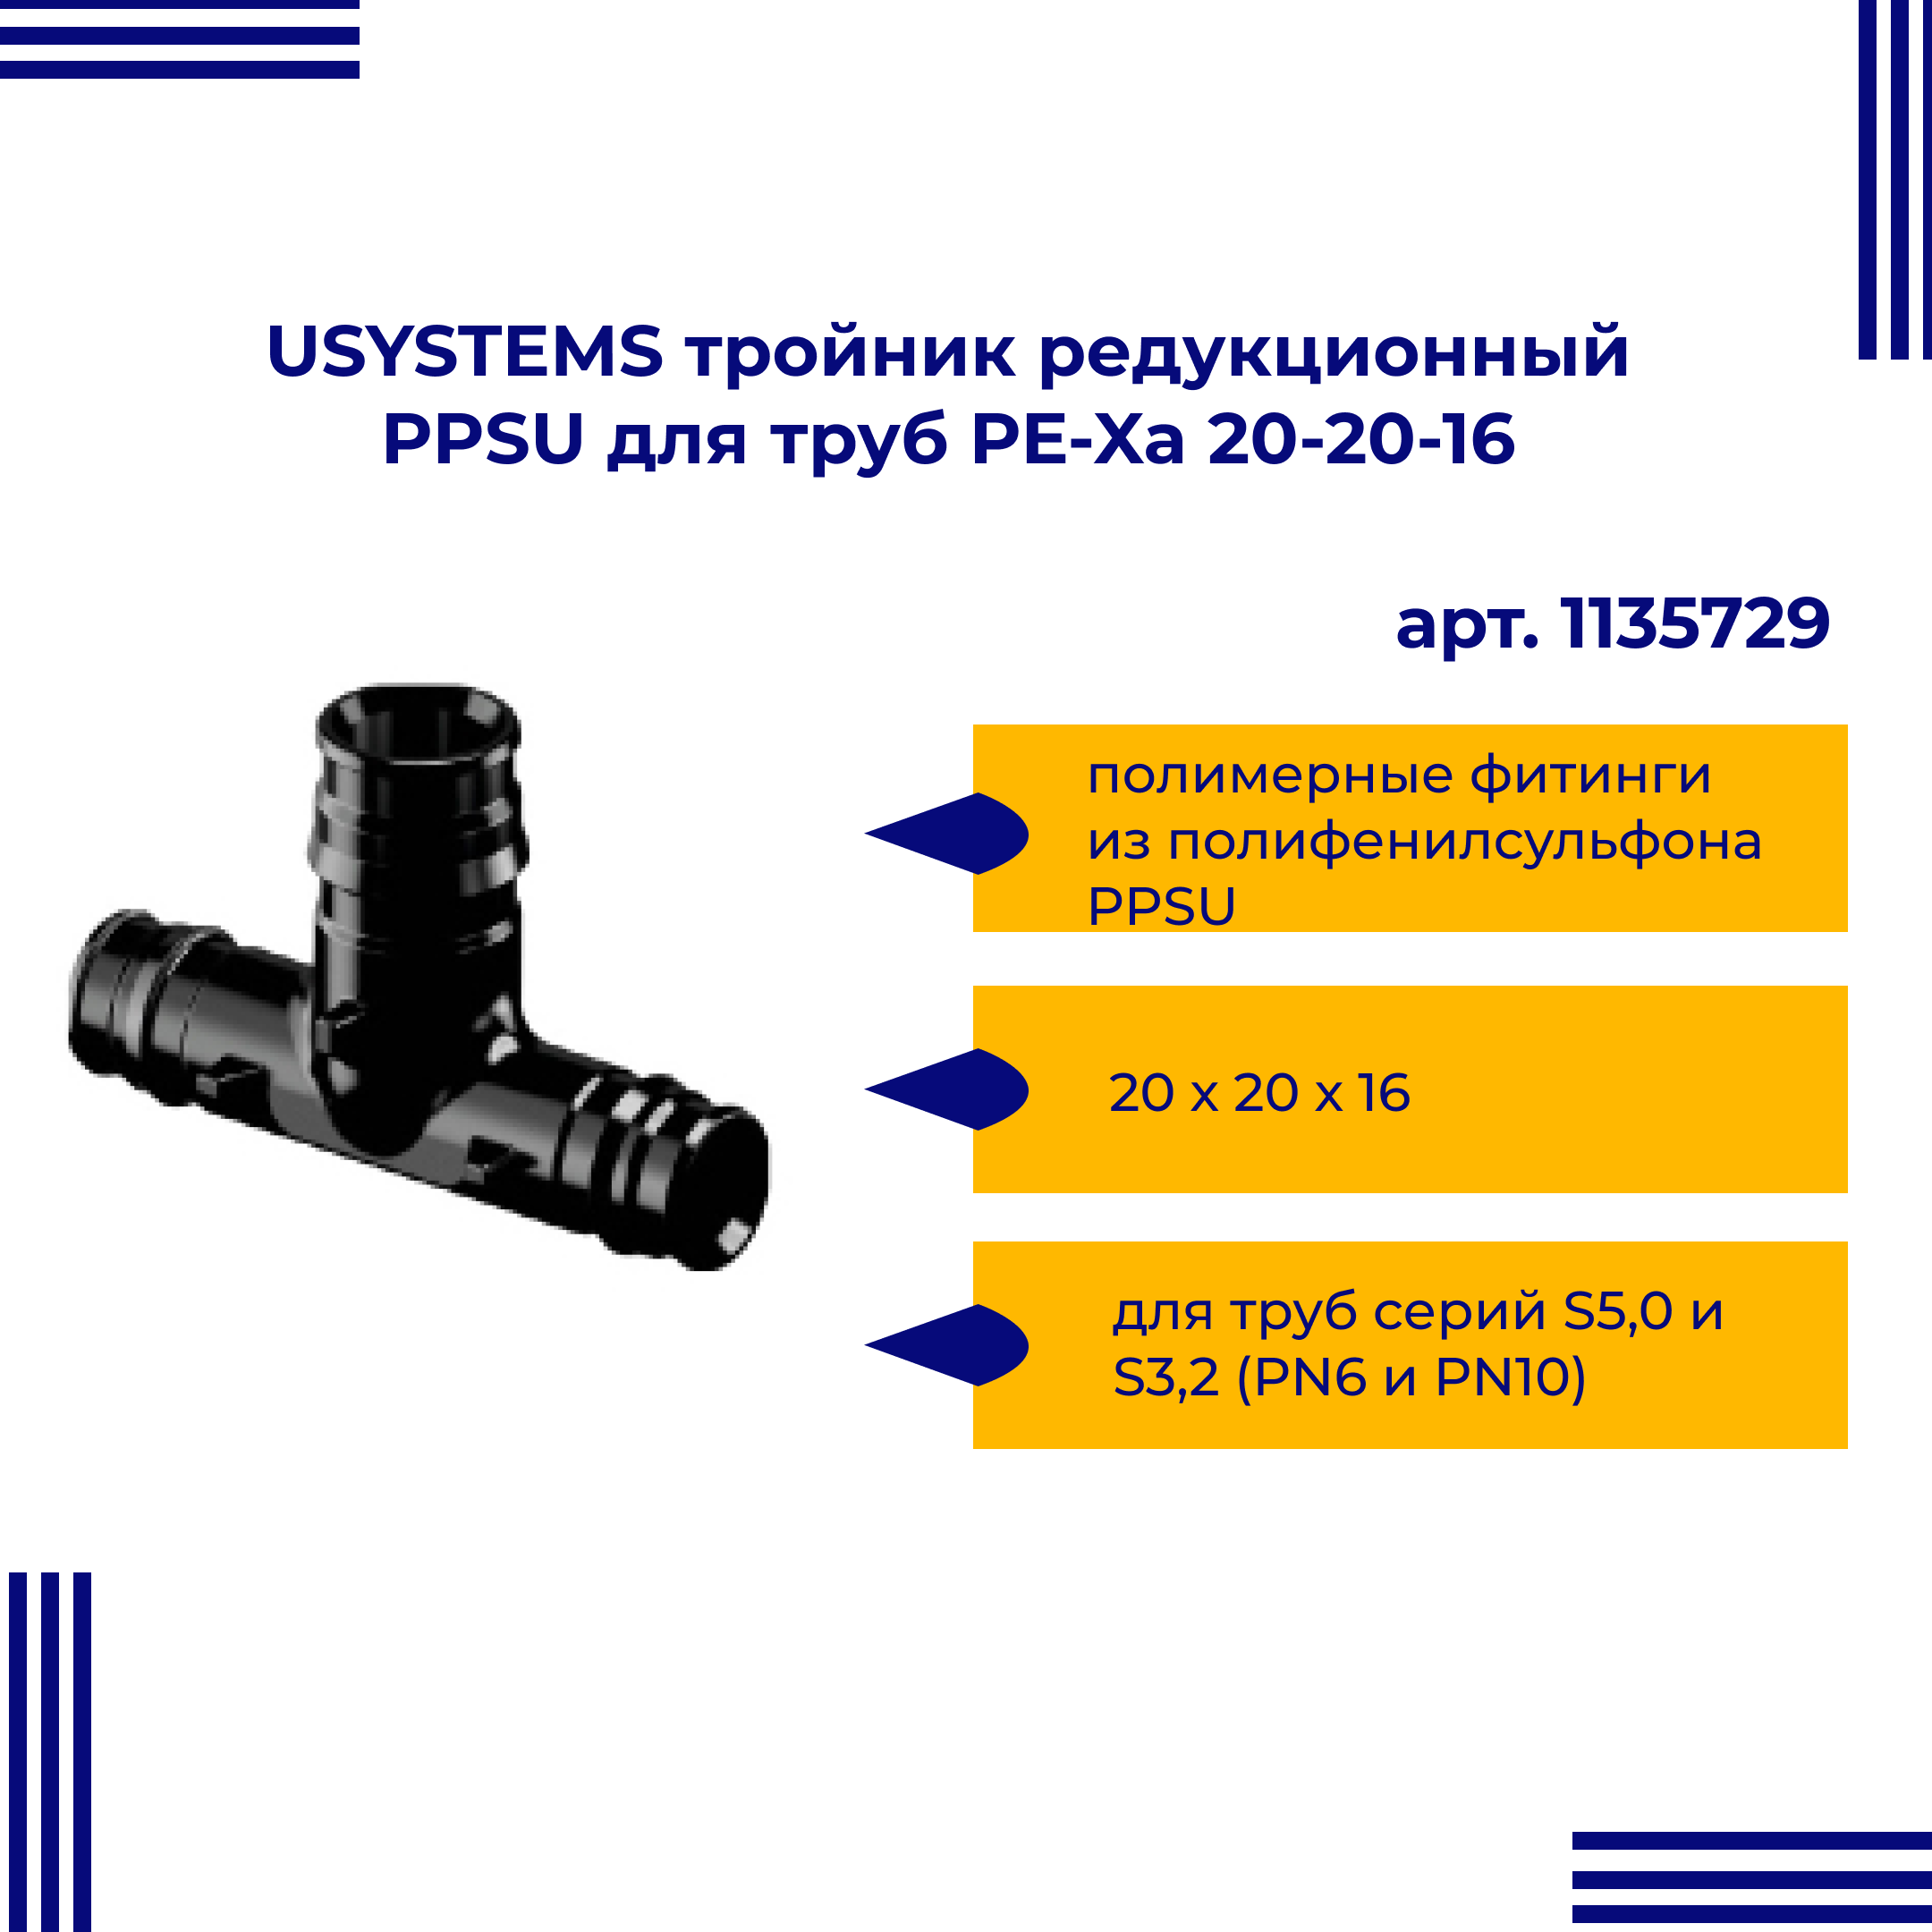 Тройник PPSU USYSTEMS редукционный для труб PE-Xa 20-20-16 1135729 двойная водорозетка для труб из сшитого полиэтилена pex qe one plus